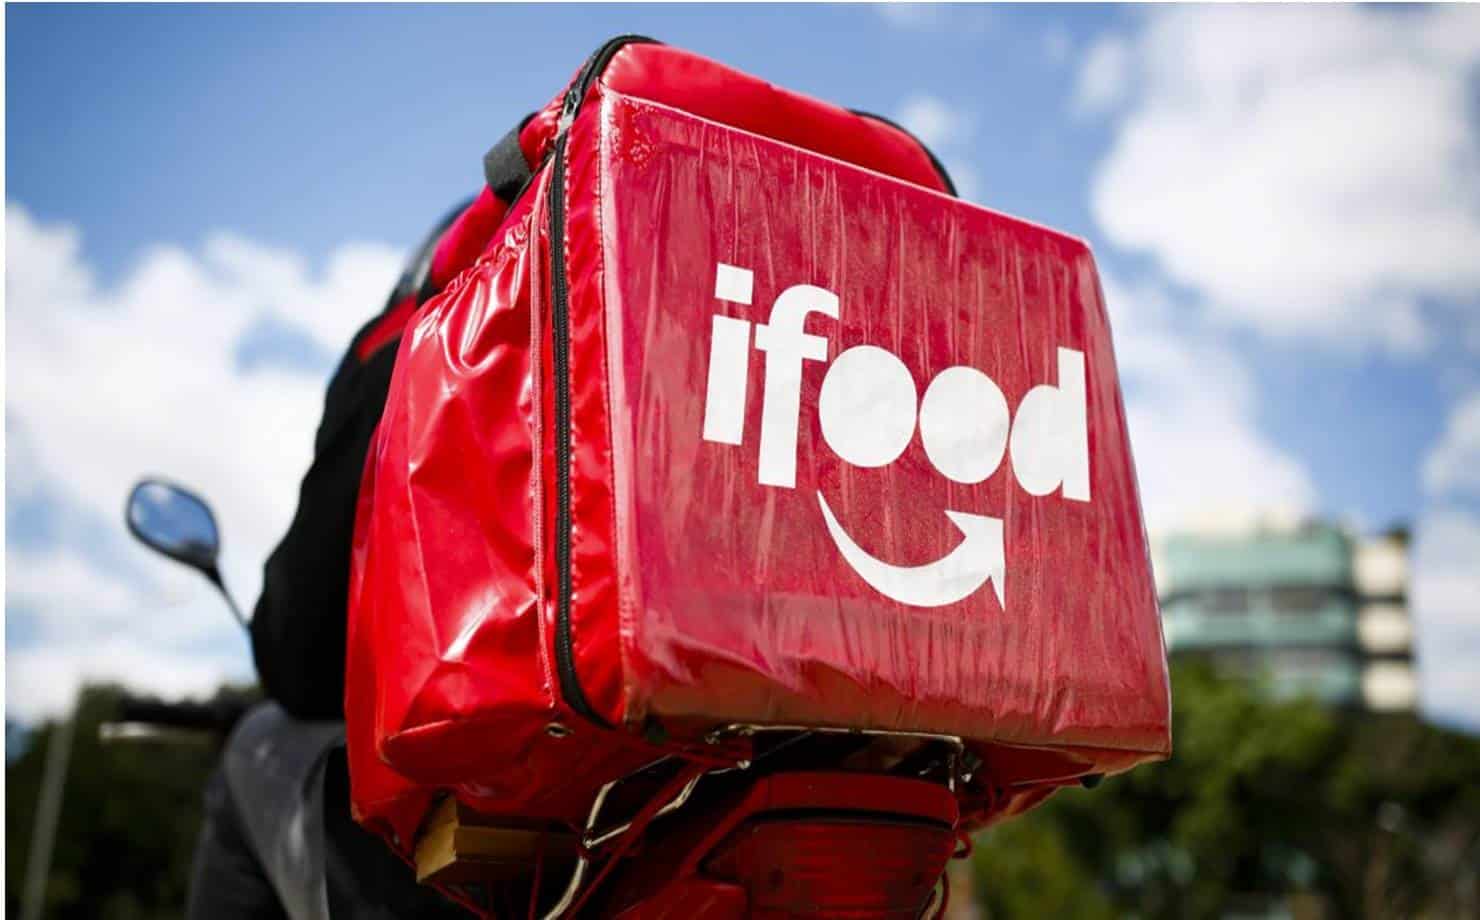 Restaurantes do iFood têm nomes alterados com mensagens de apoio a Bolsonaro e contrárias à vacina